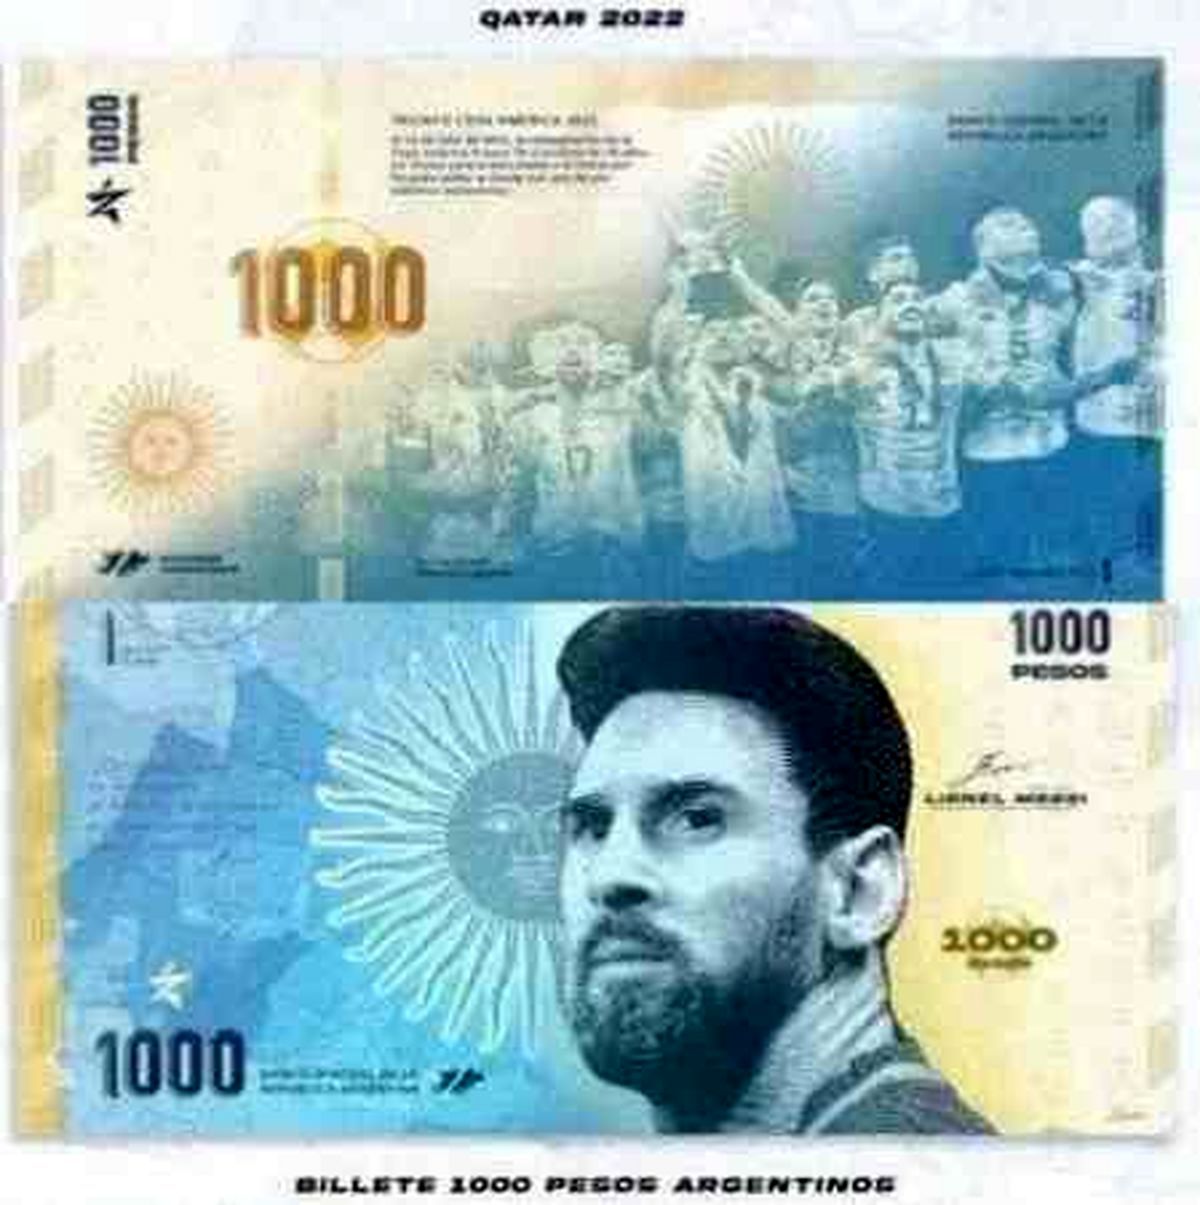 واکنش بانک ملی آرژانتین به چاپ اسکناس با تصویر مسی